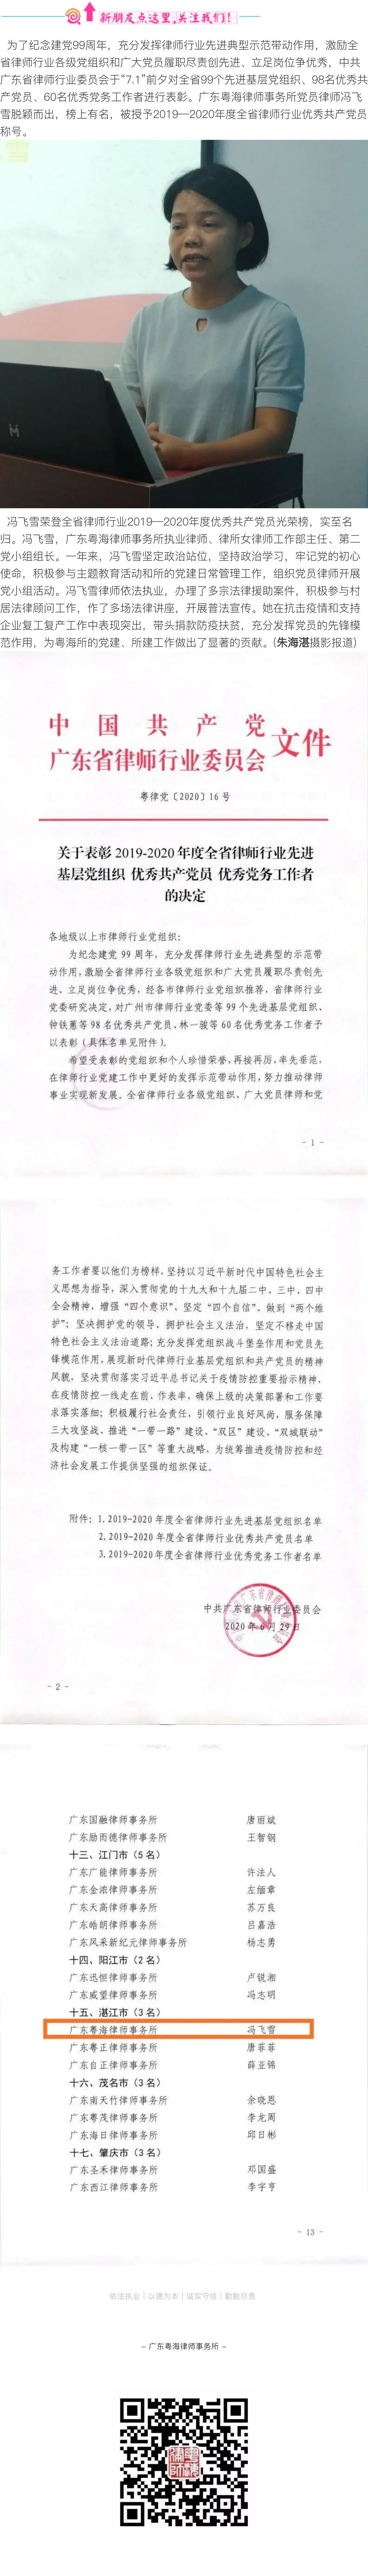 冯飞雪荣登省律师行业“七一”表彰光荣榜